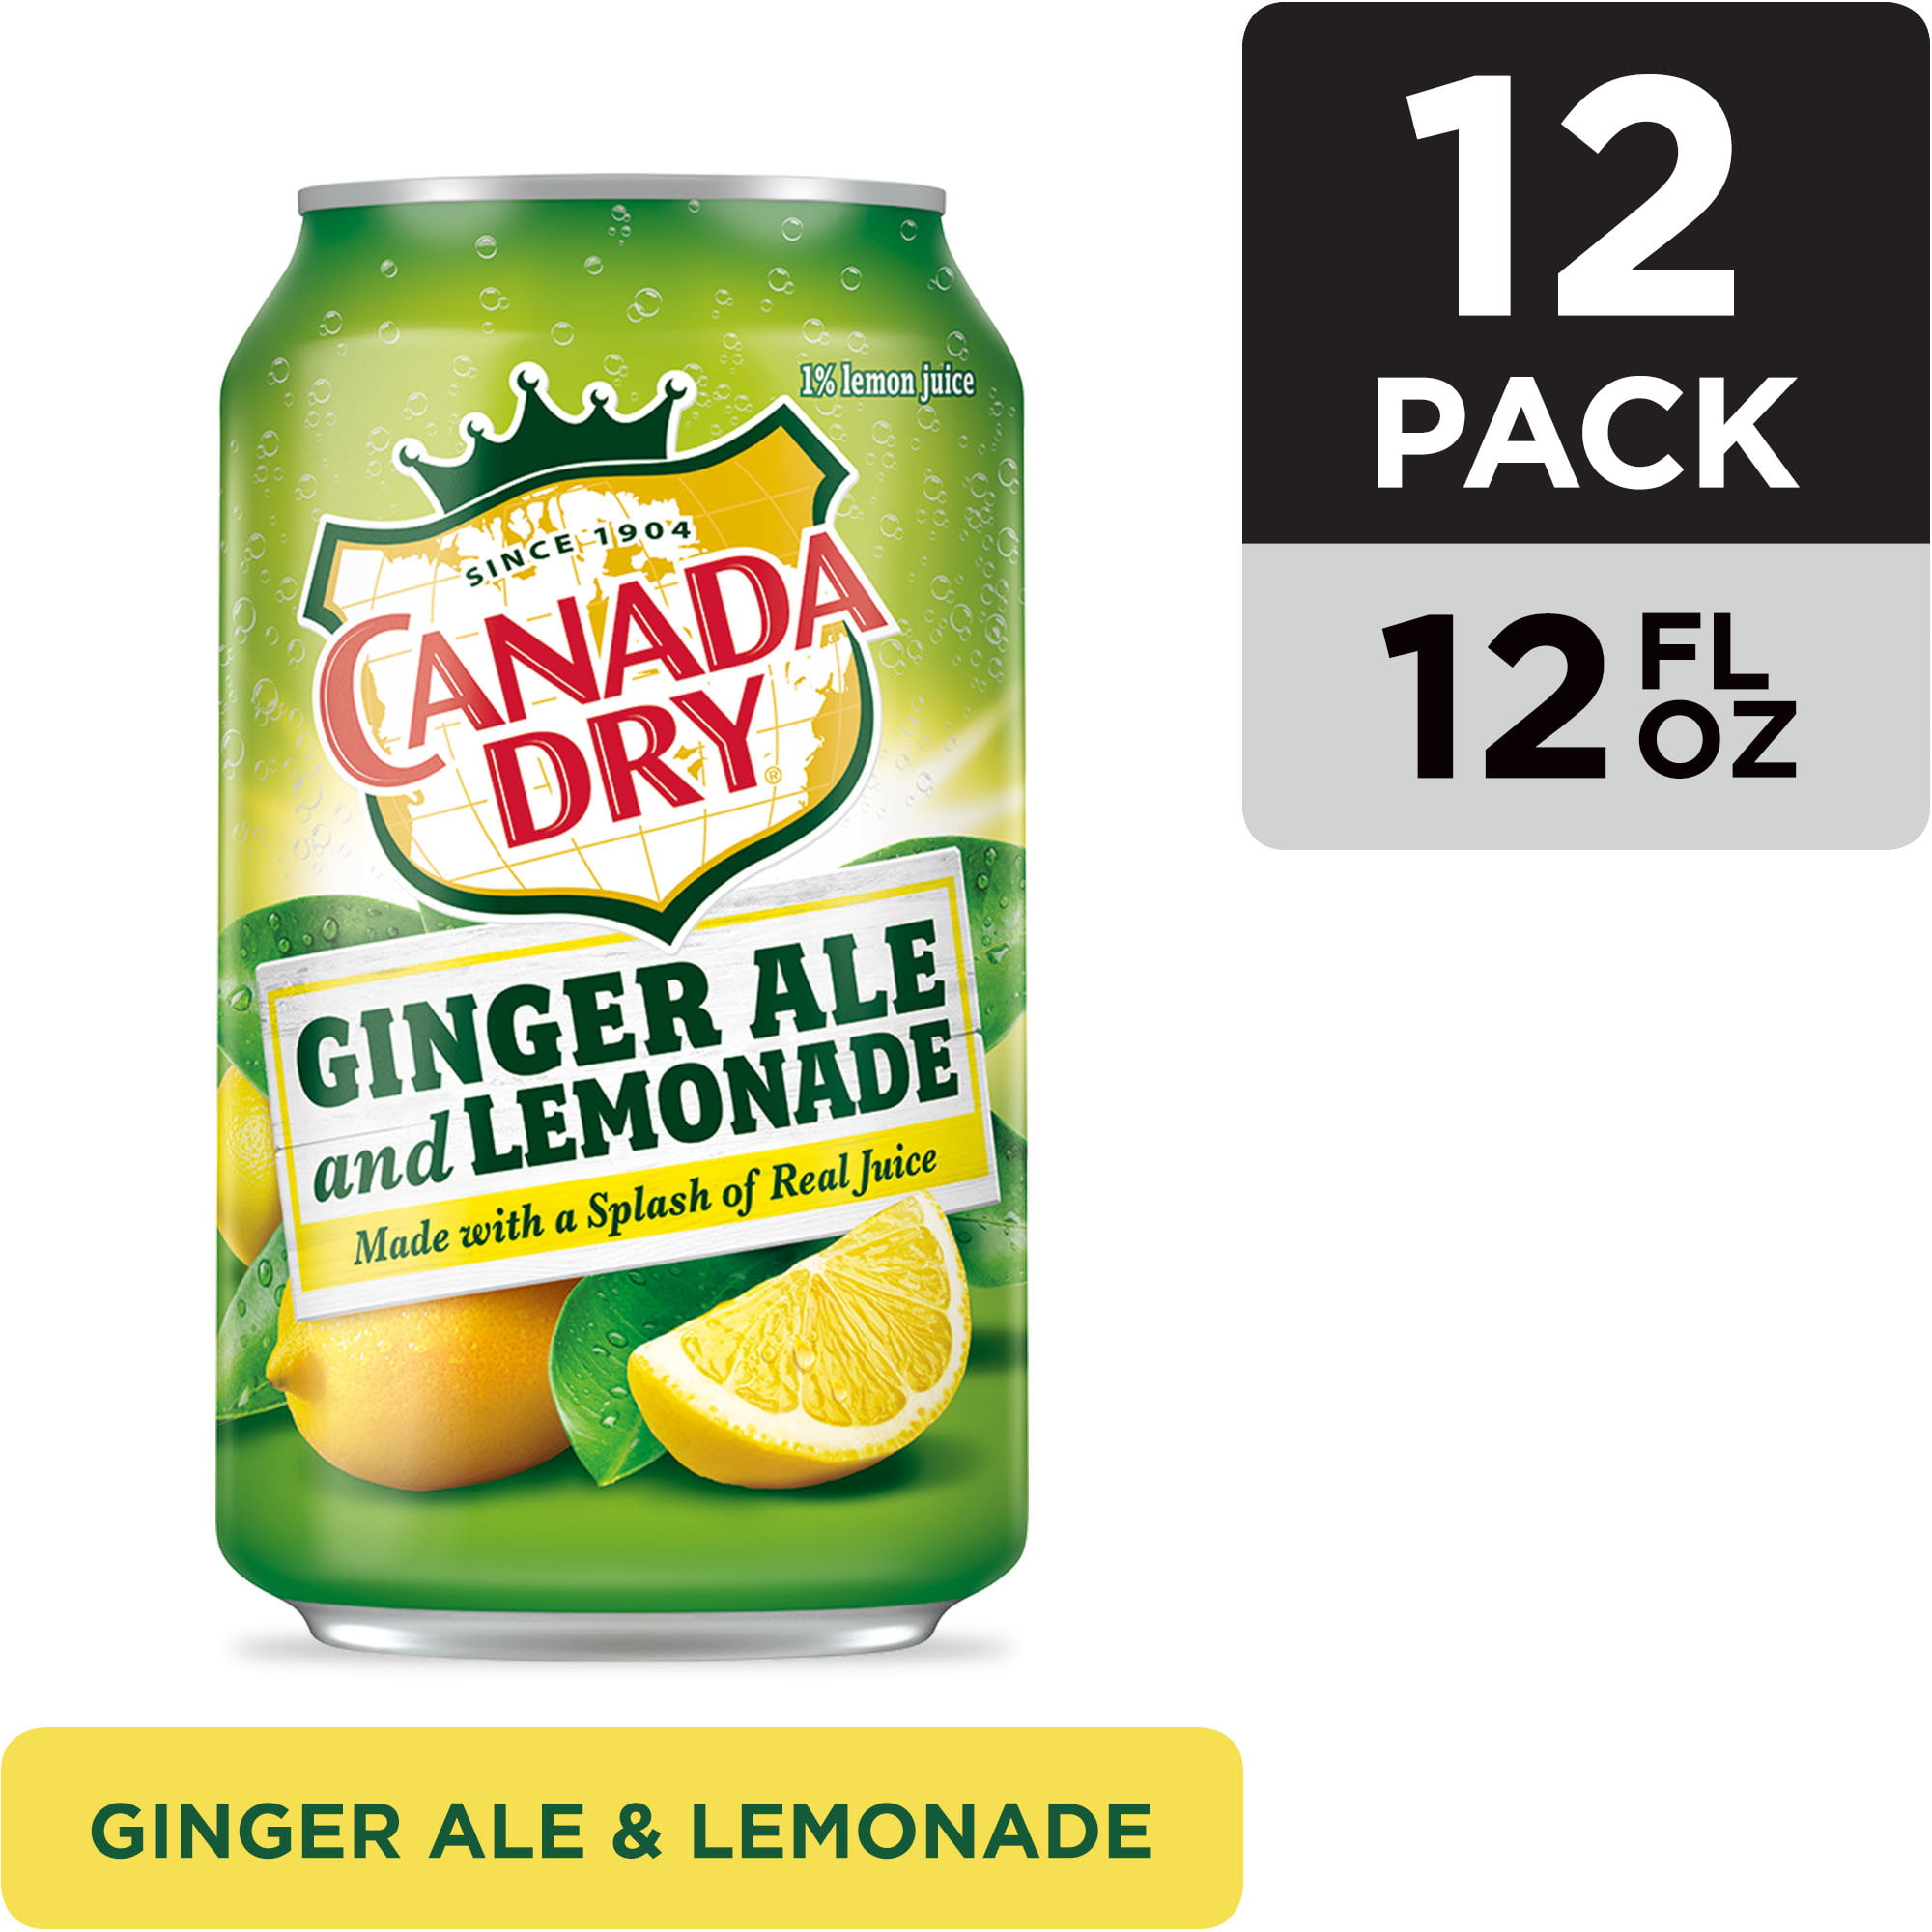 Canada Dry Diet Ginger Ale And Lemonade 12 Fl Oz 48 Cans Canada Dry Ginger Ale And Lemonade 12 Fl Oz Cans 12 Pack Walmart Com Walmart Com